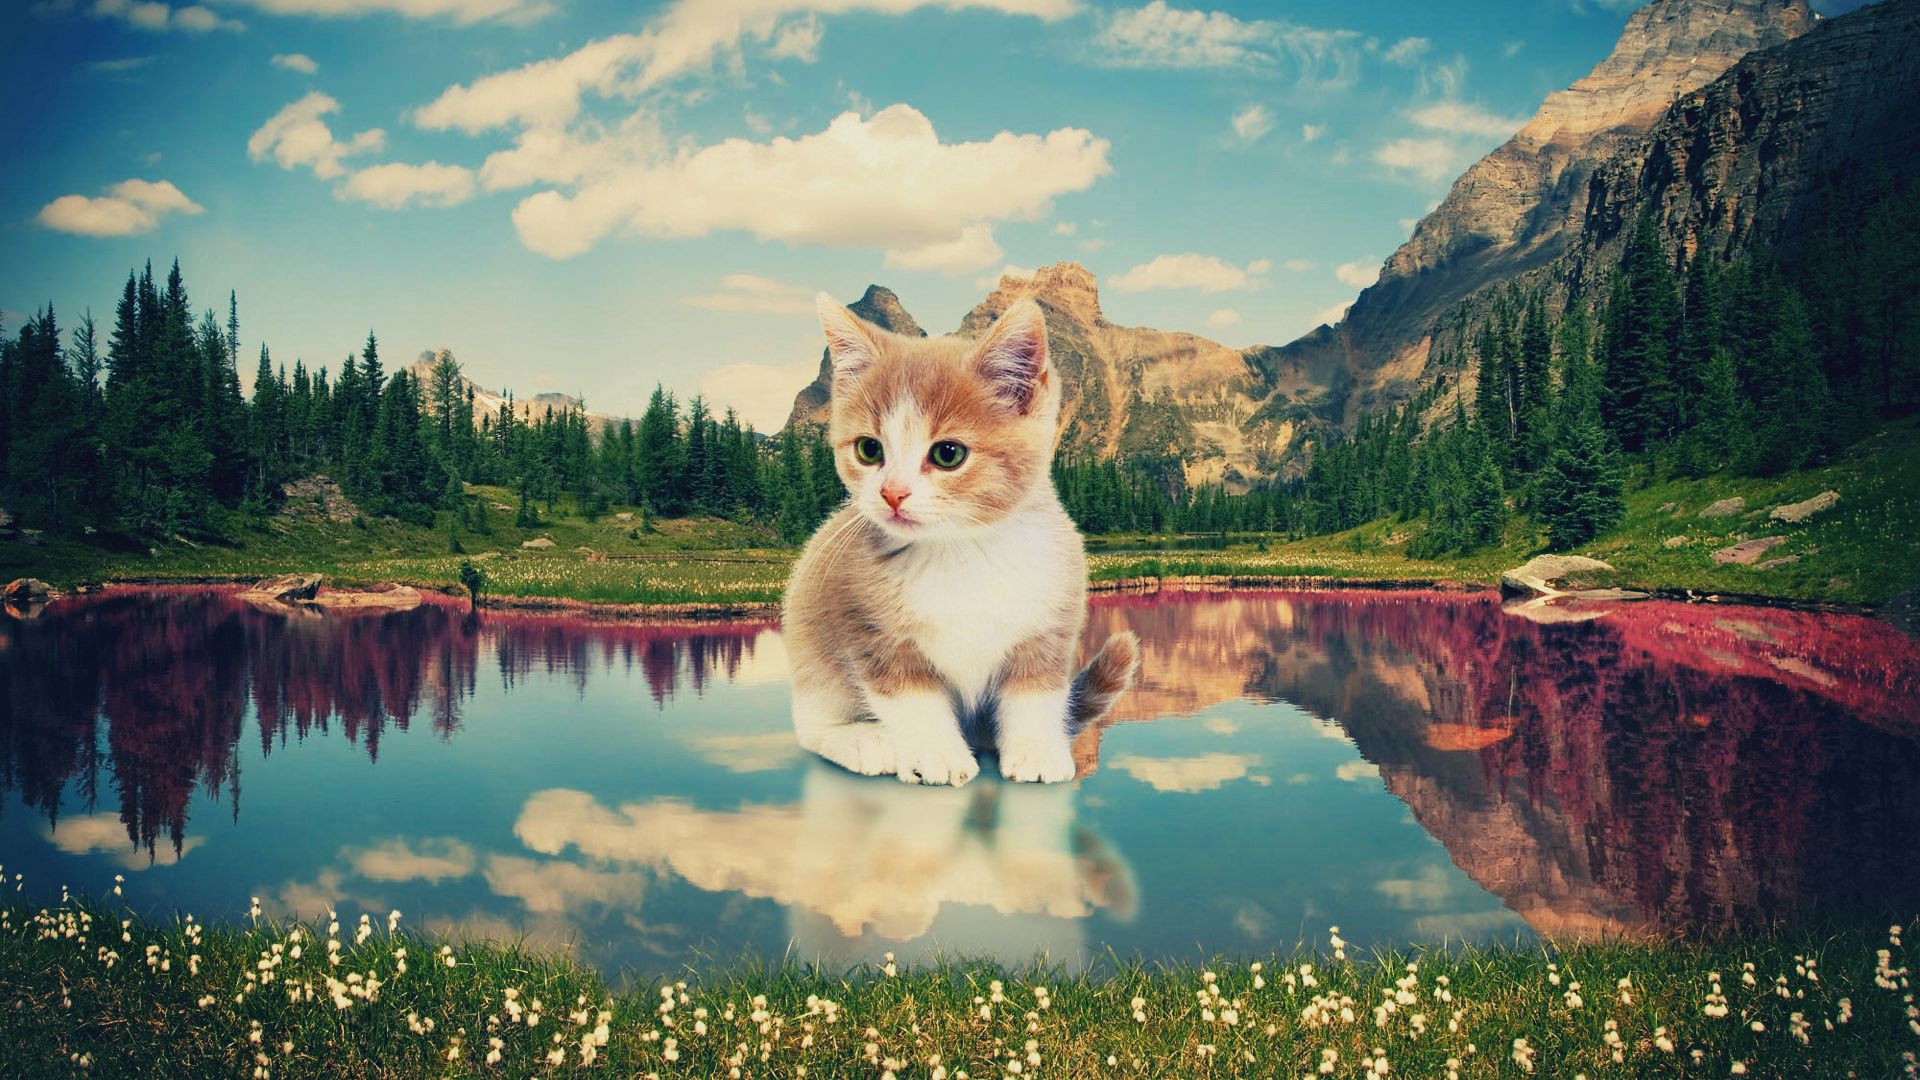 kitty, art, nature, lake, kitten, photoshop